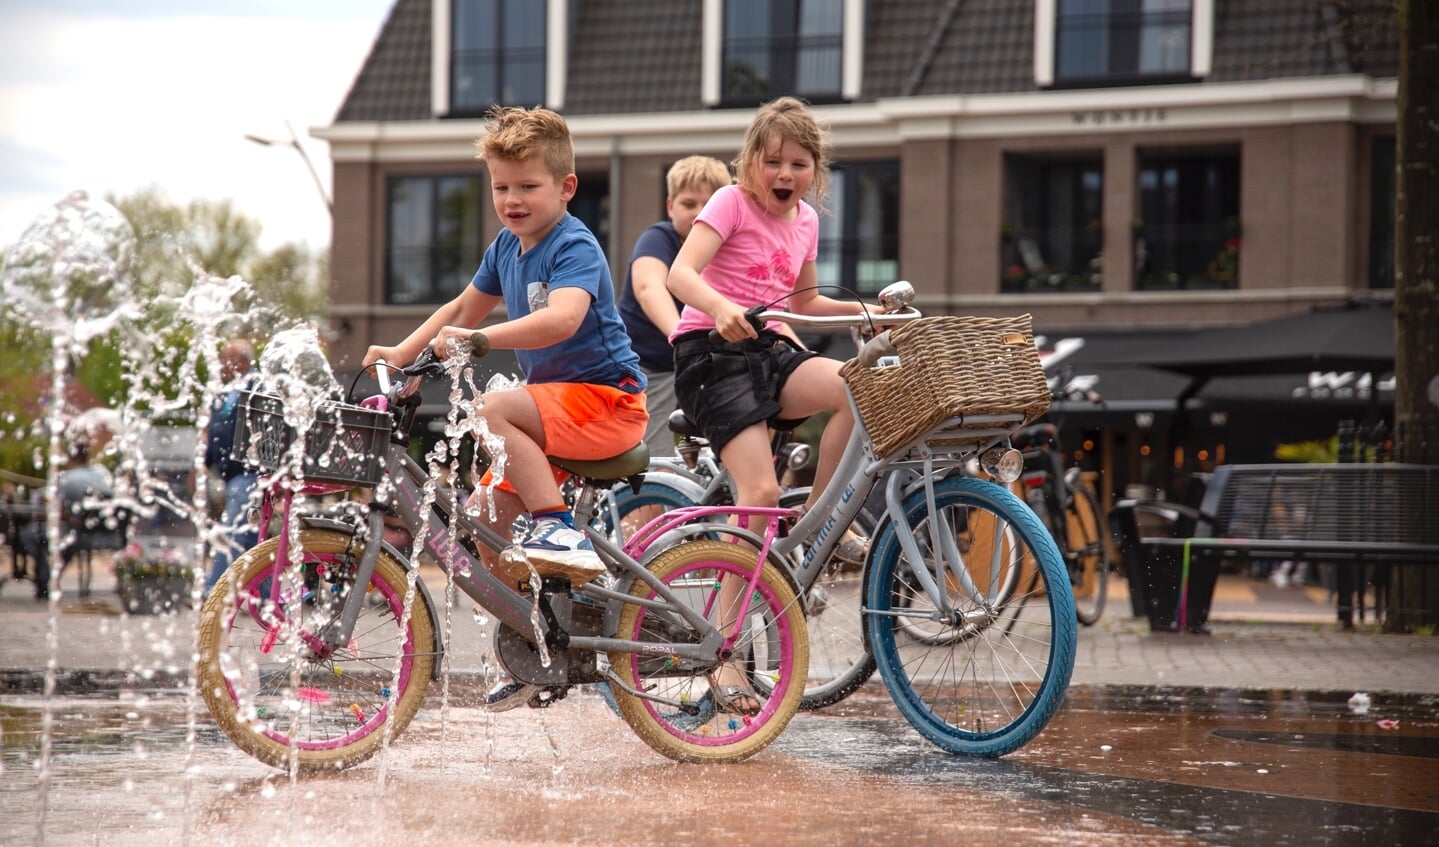 Mensen genieten van warme zondag in Barneveld en Voorthuizen